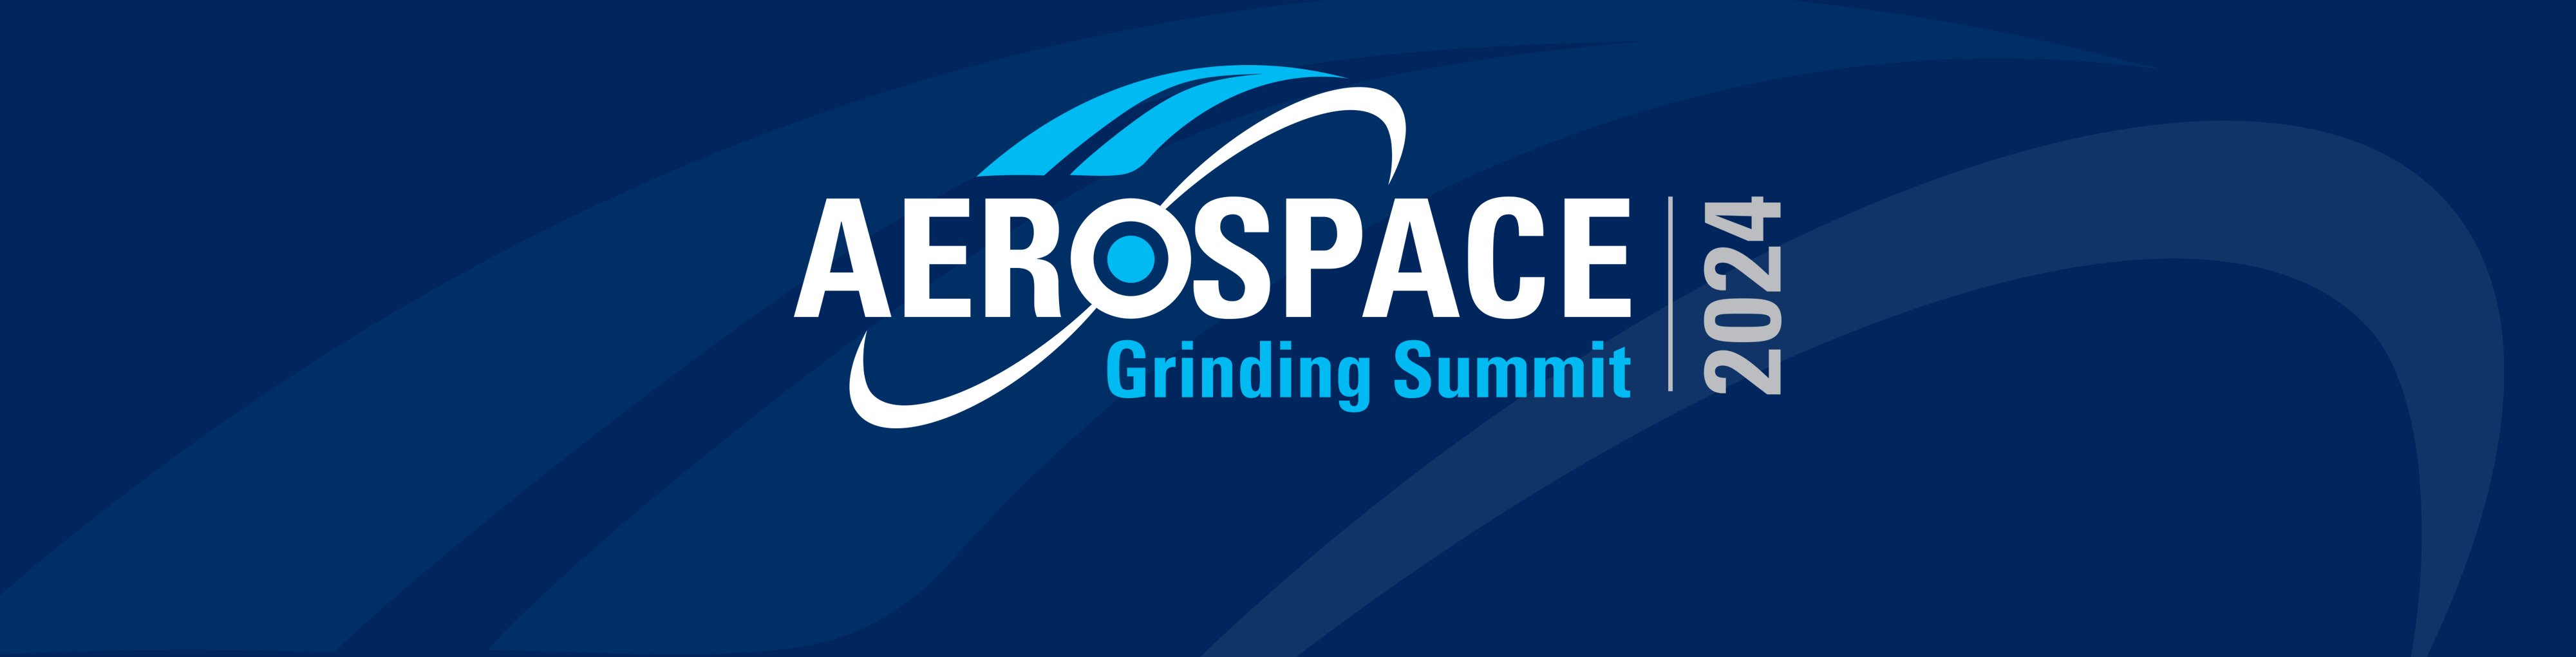 aerospace-summitheader-main